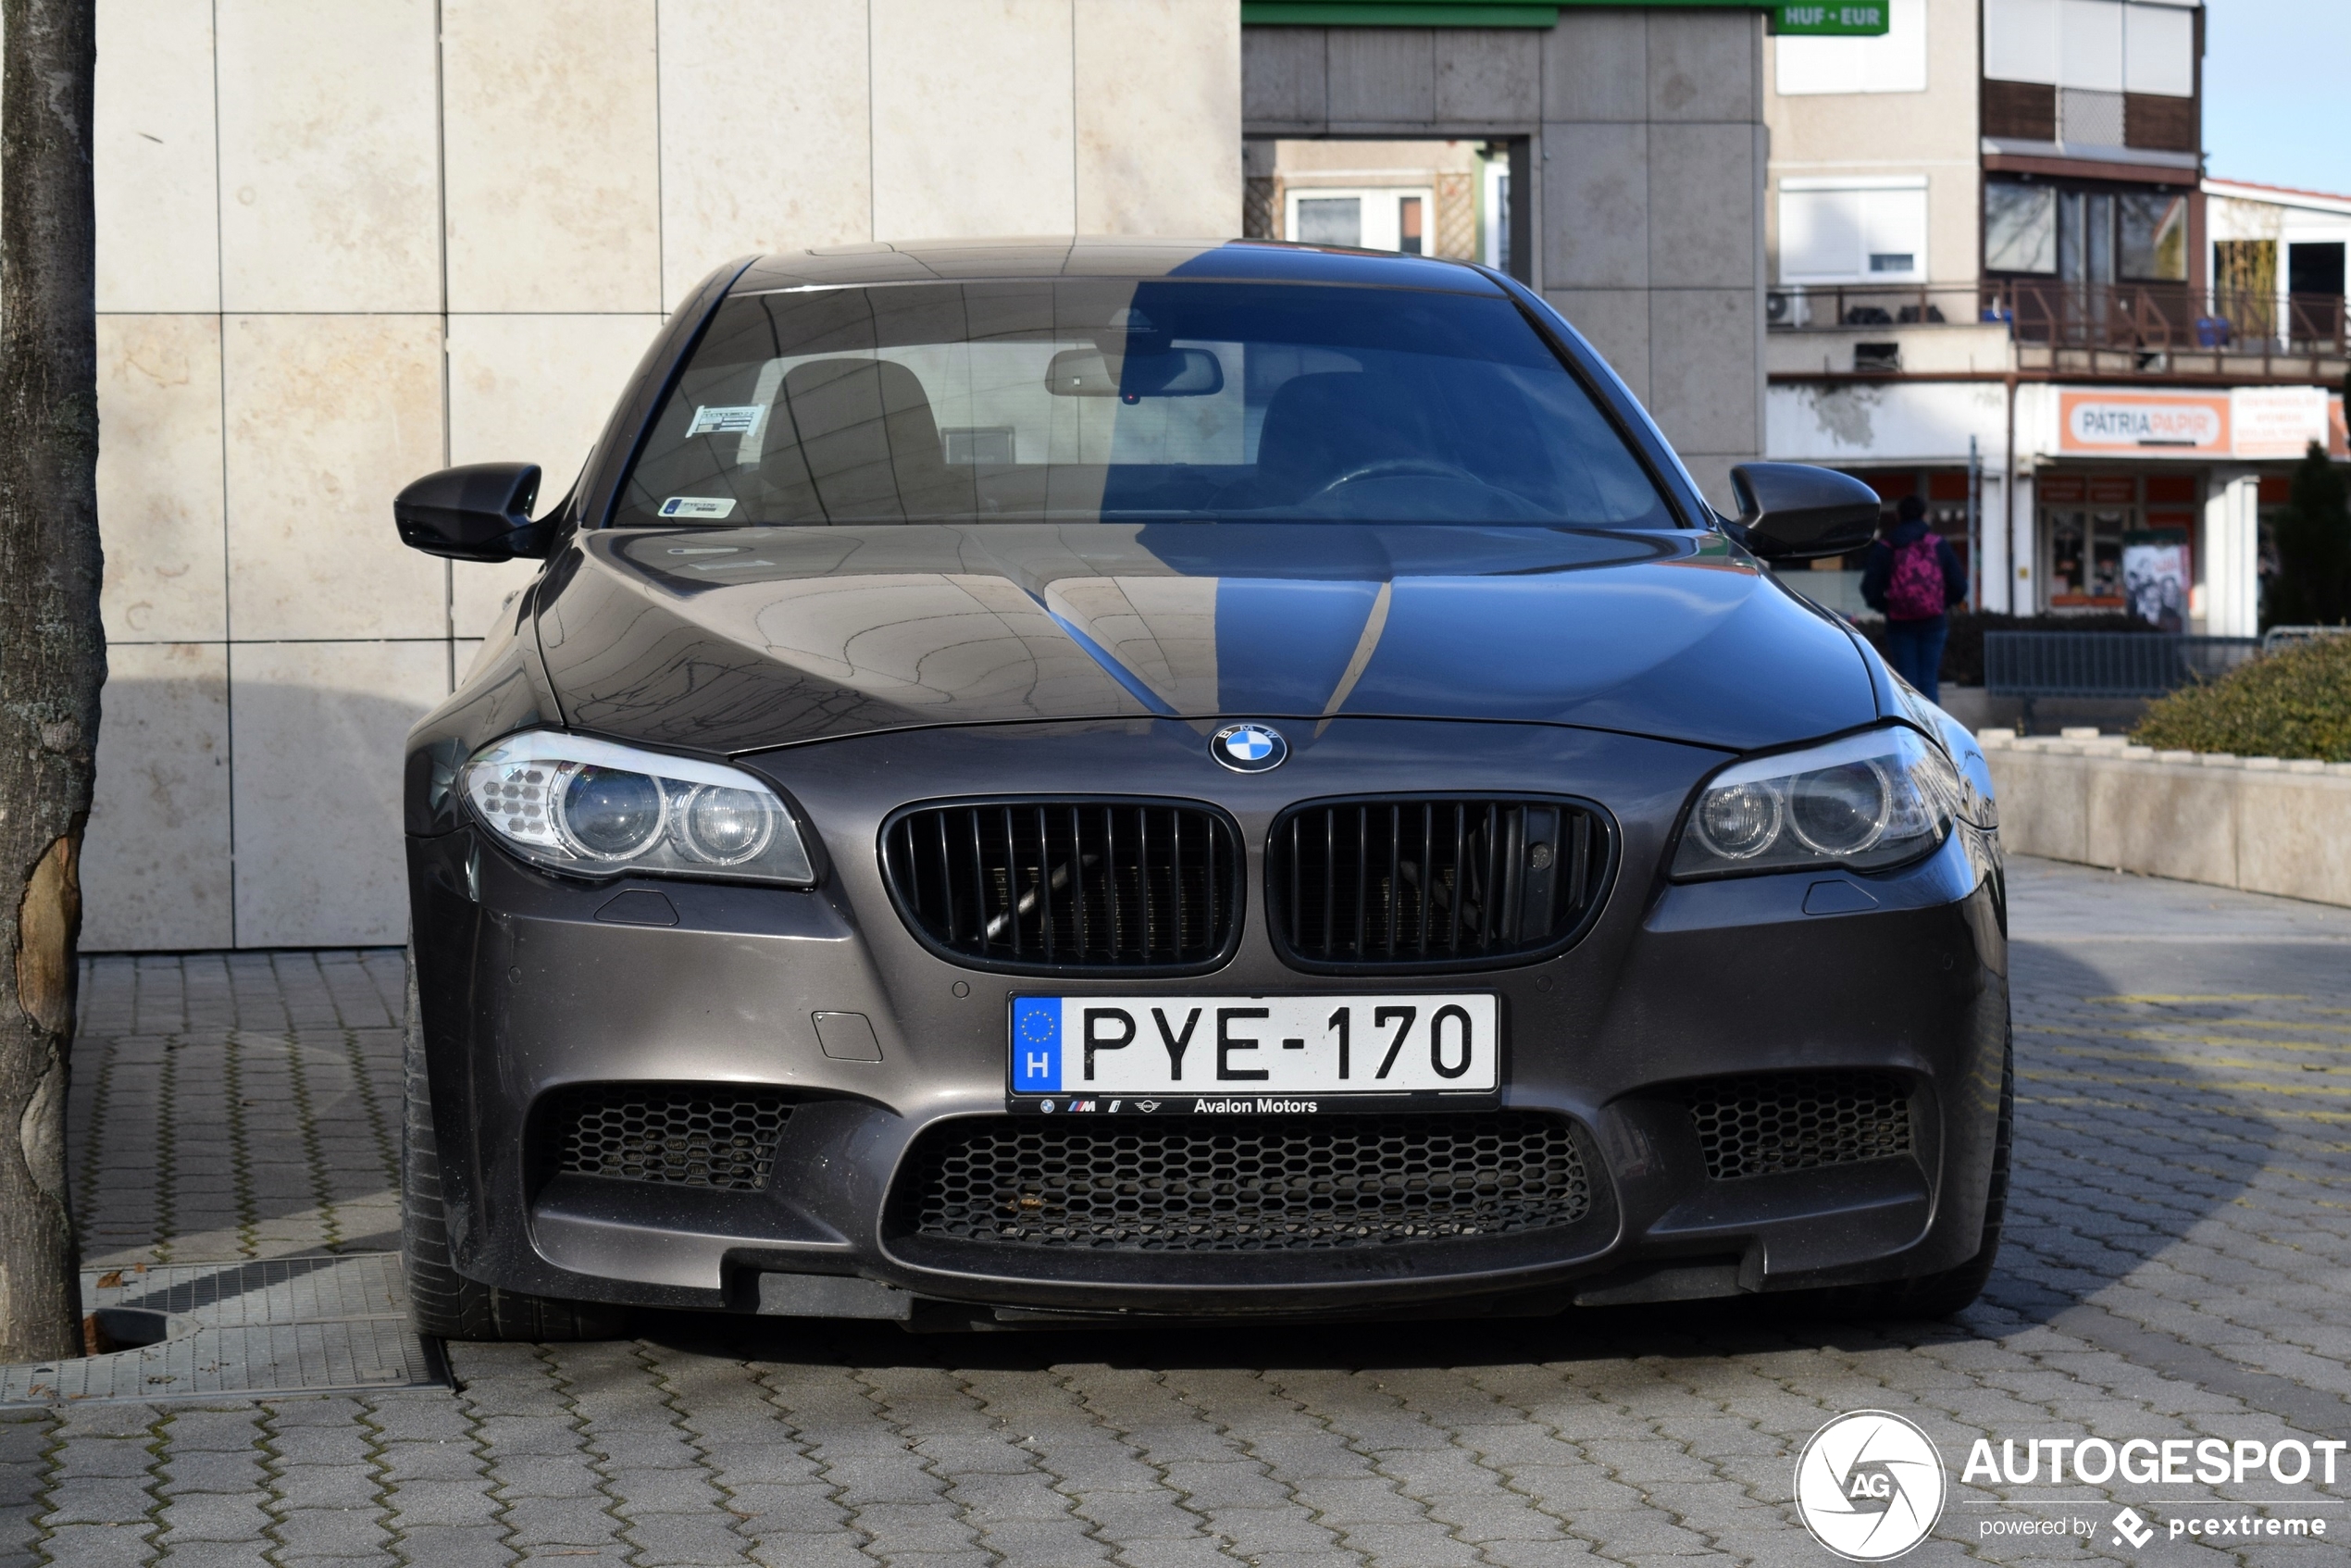 BMW M5 F10 2011 - 01-02-2023 20:25 - Autogespot